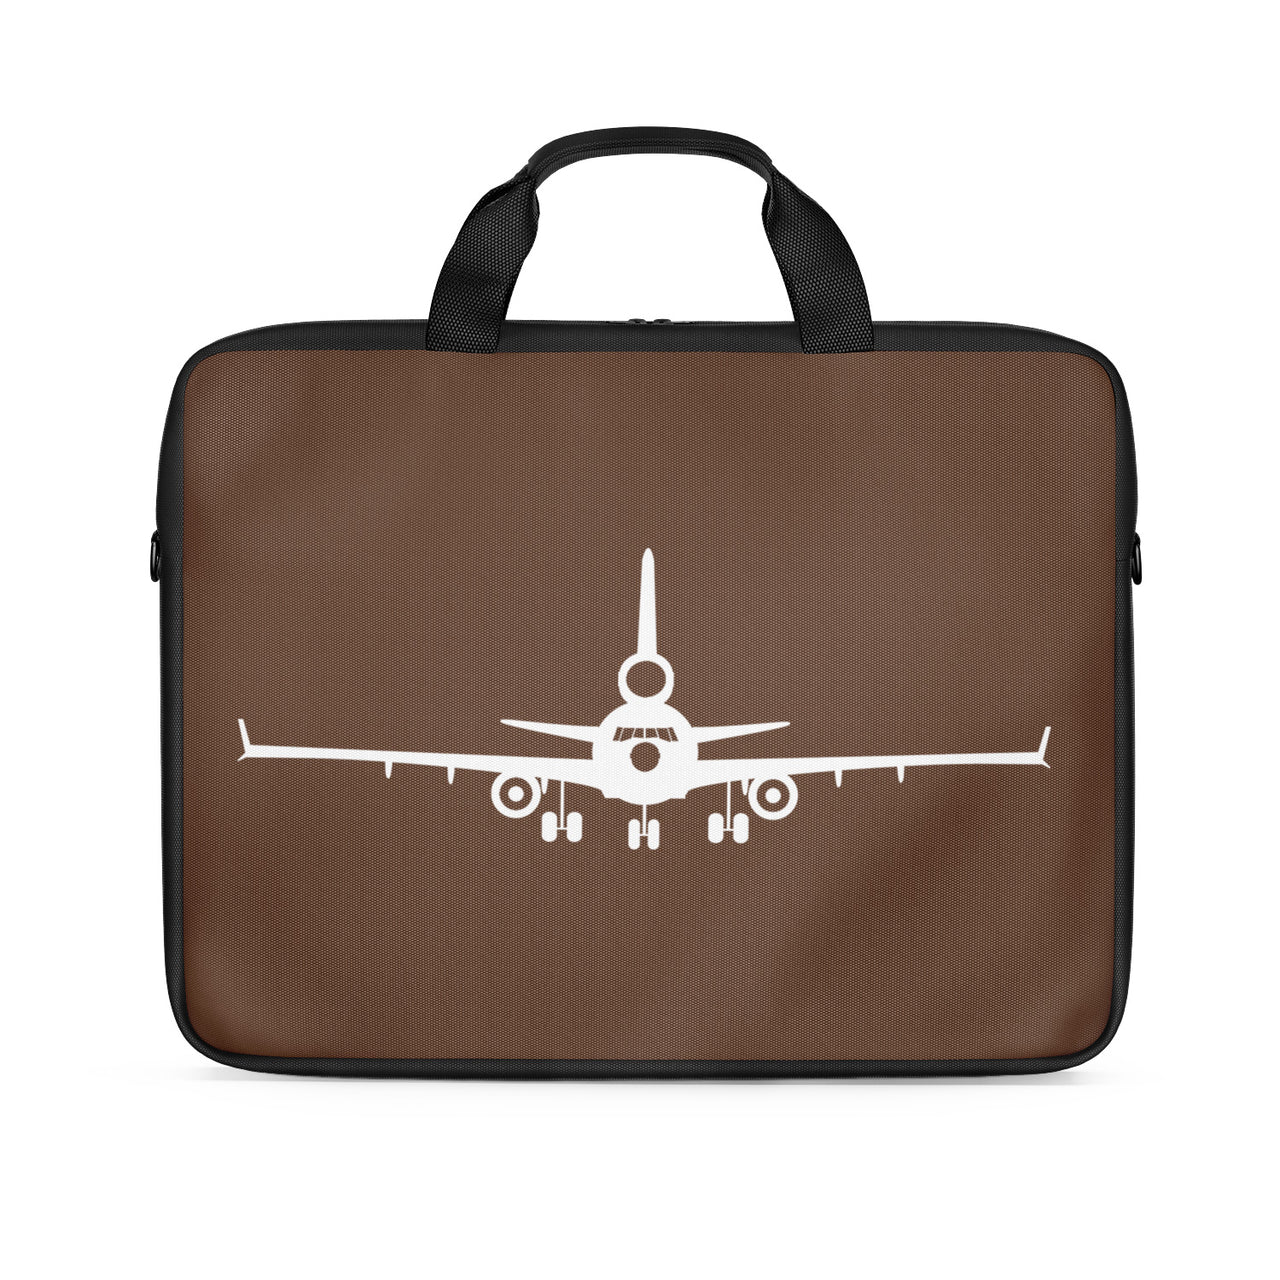 McDonnell Douglas MD-11 Silhouette Plane Designed Laptop & Tablet Bags